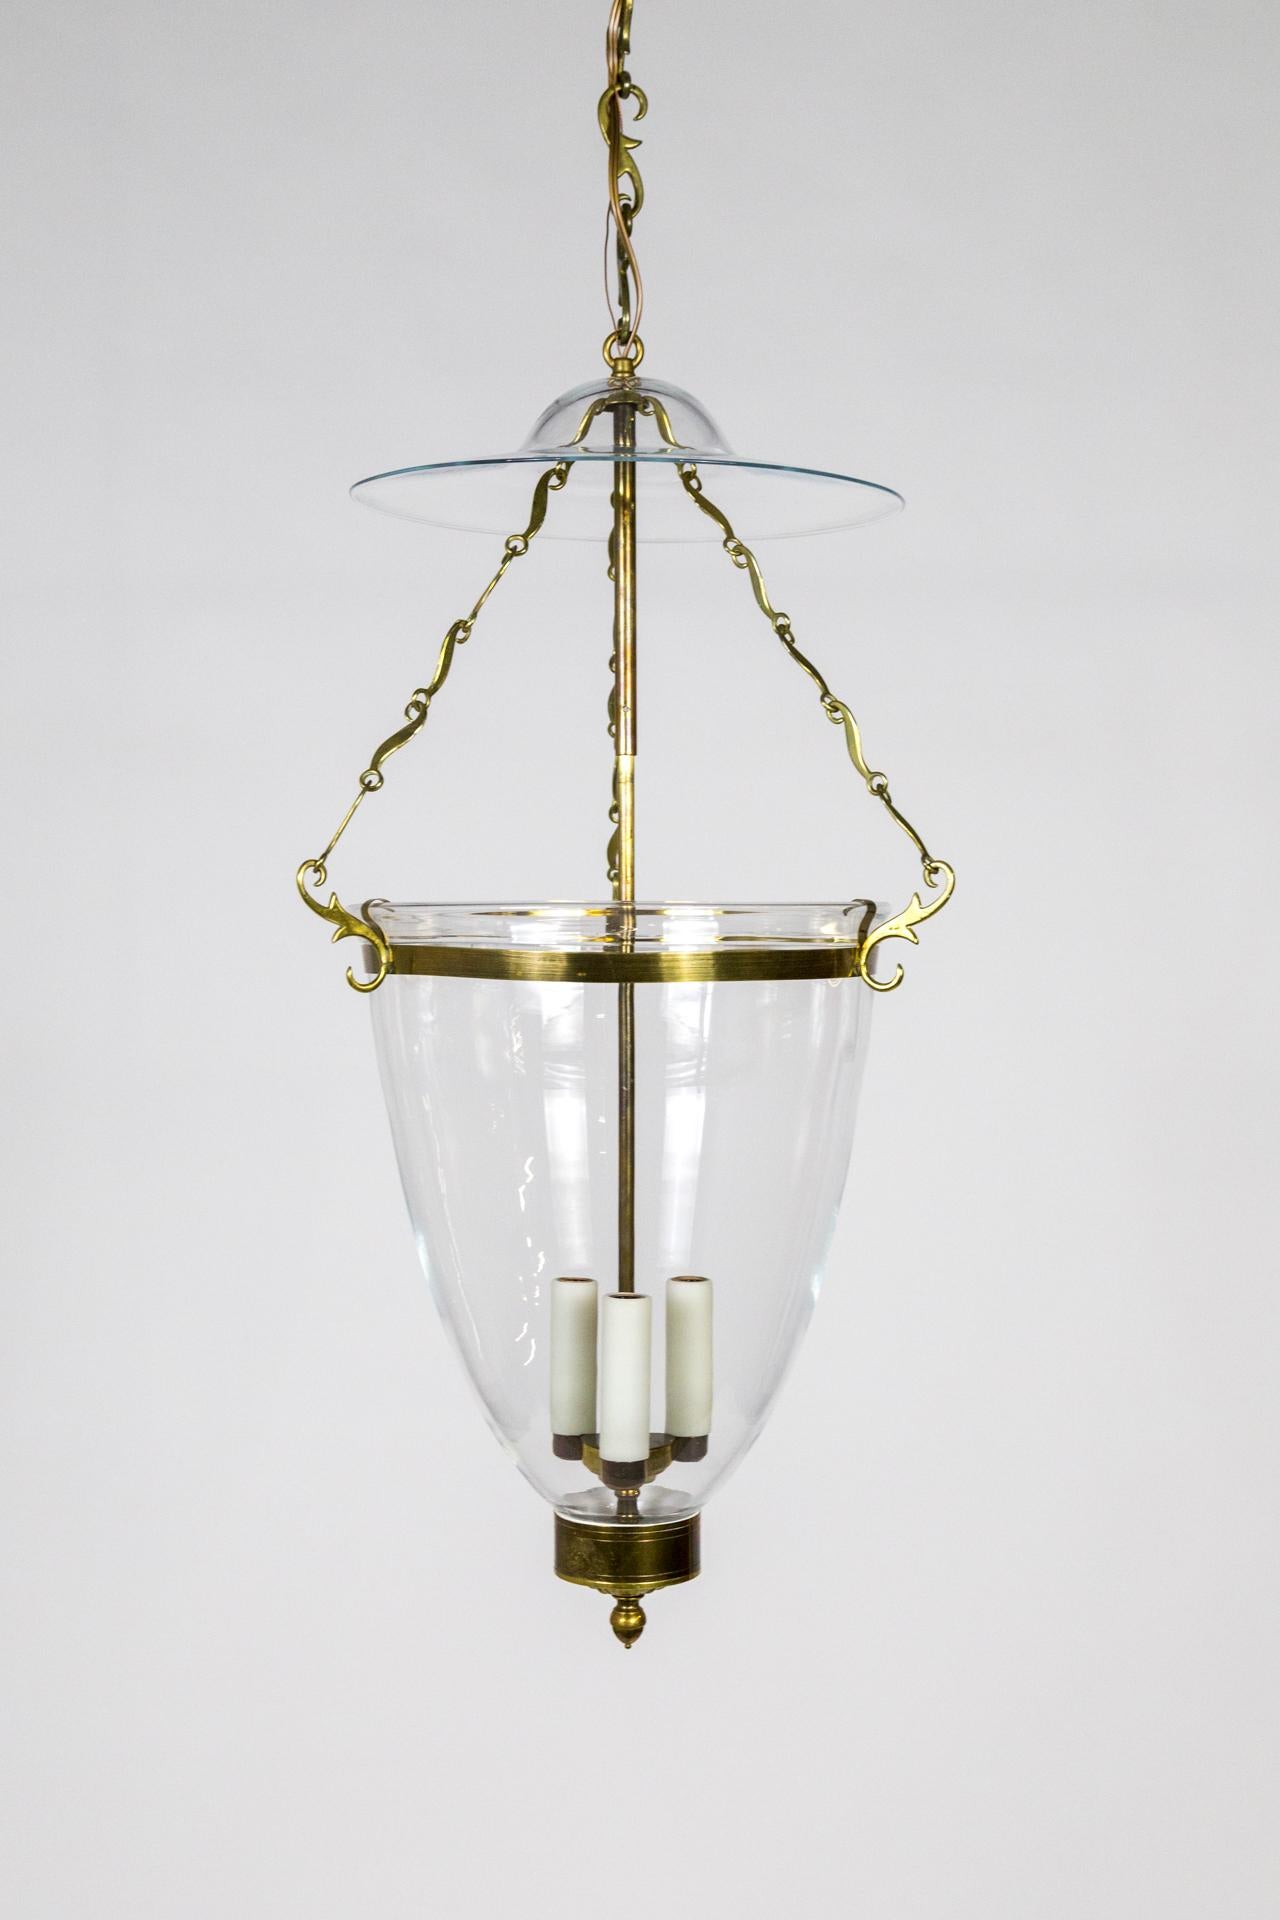 Belle Epoque Style Brass & Glass Bell Jar Lantern w/ Smoke Bell & Swirling Chain For Sale 3